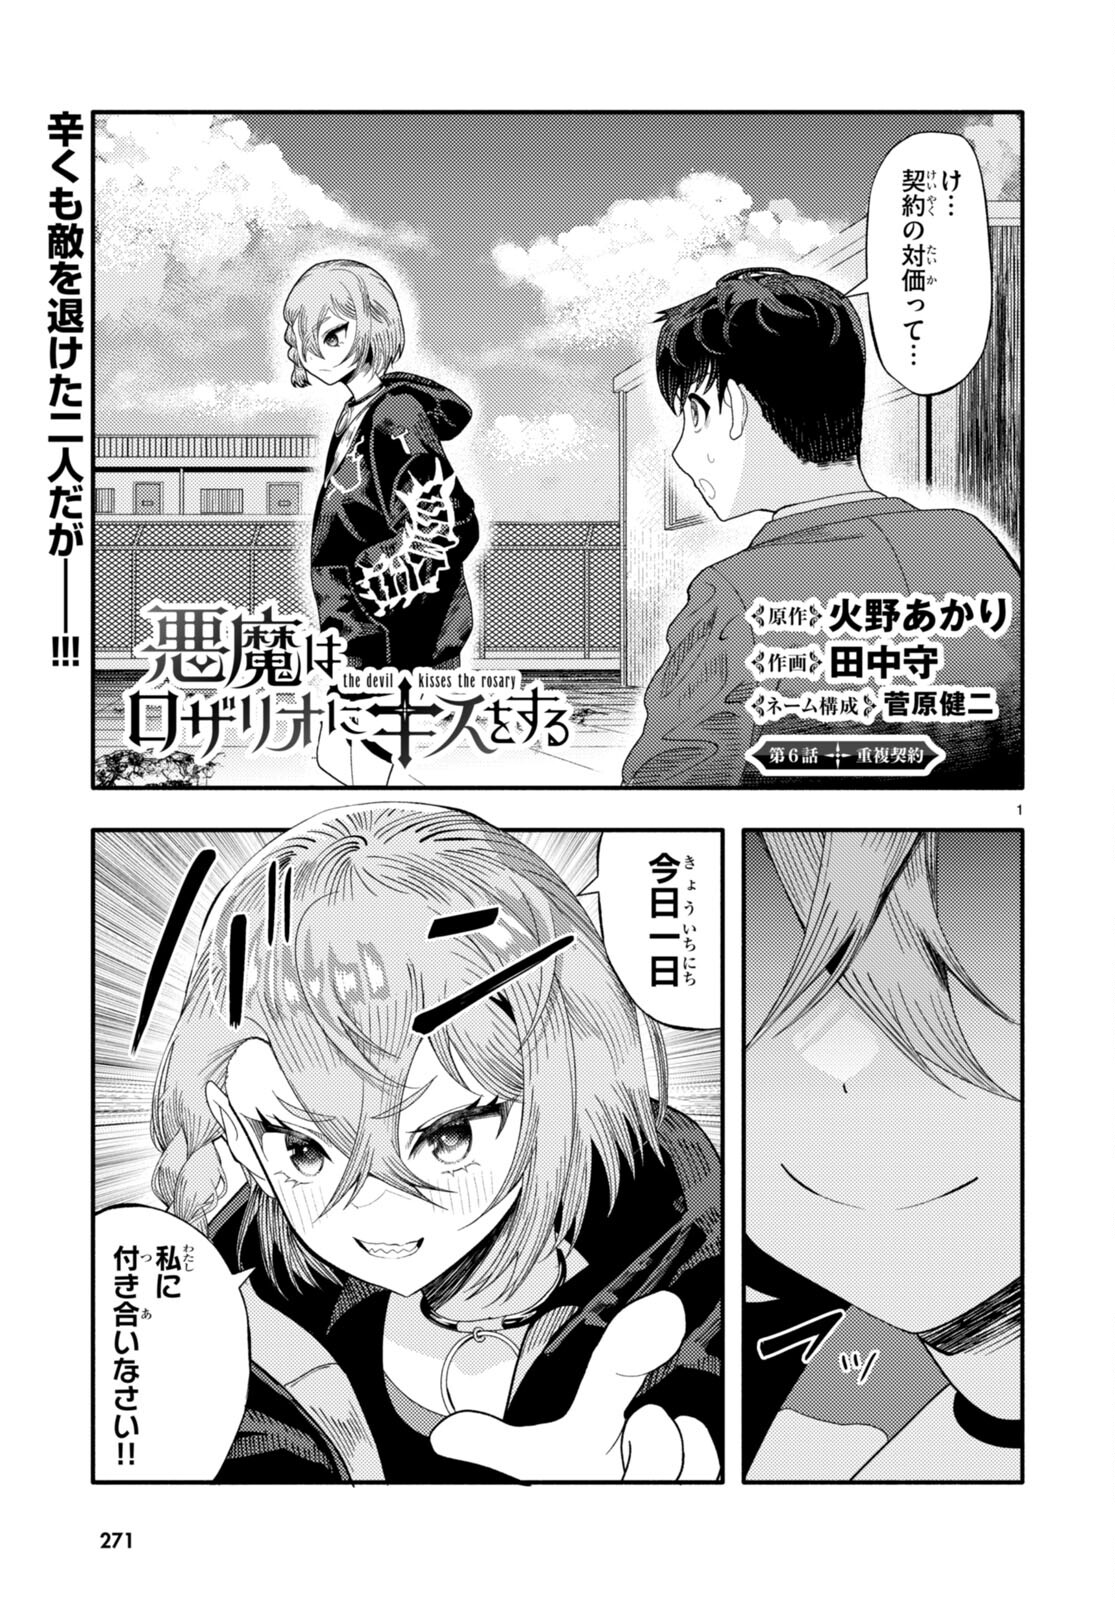 Akuma wa Rozario ni Kiss wo suru - Chapter 6 - Page 1